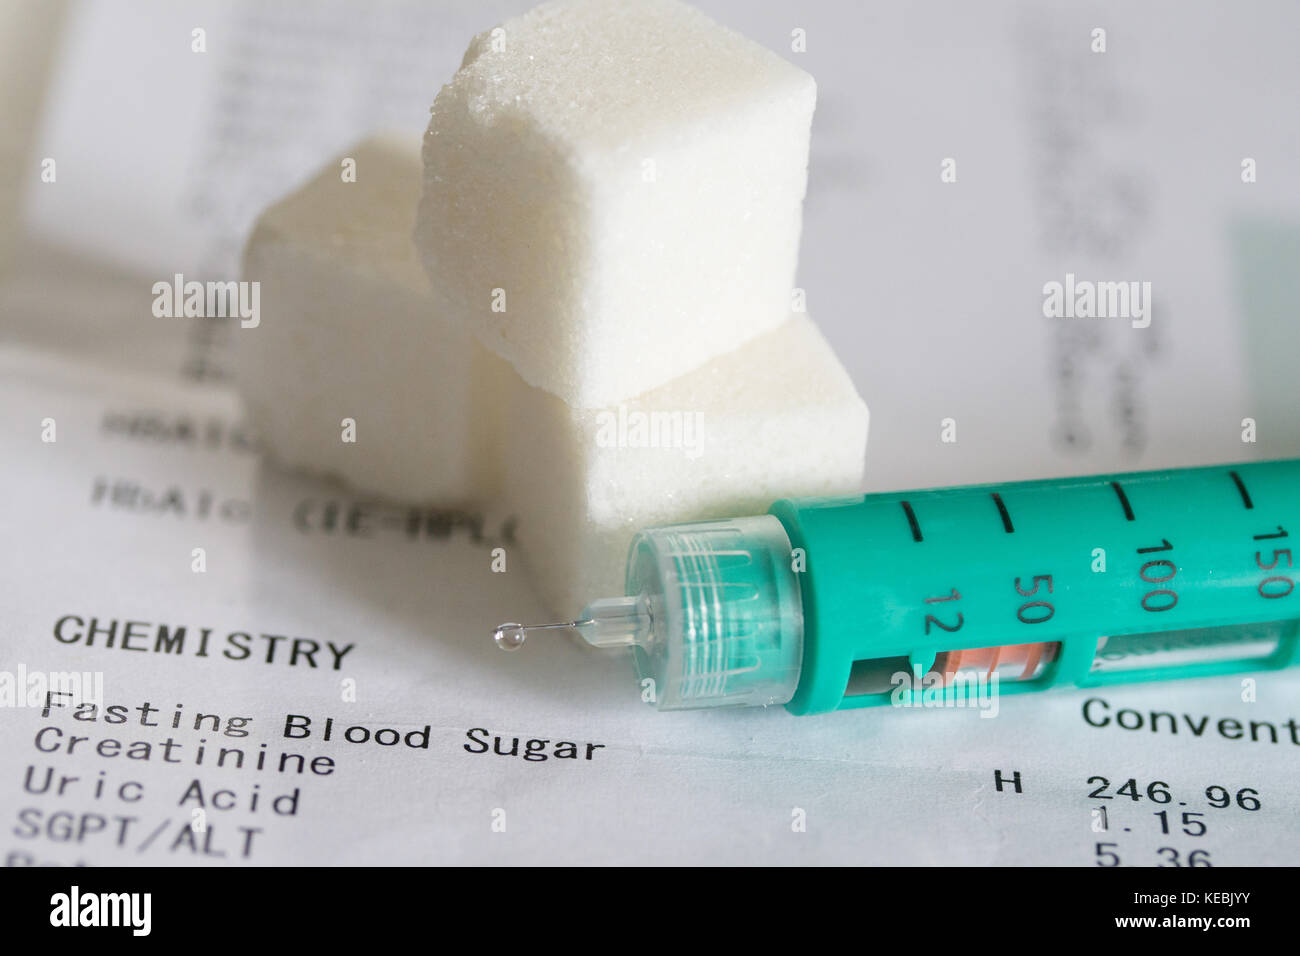 Insulinstift, Zuckerwürfel und daraus resultierender Testausdruck, der auf Diabetes-Probleme hinweist. Stockfoto